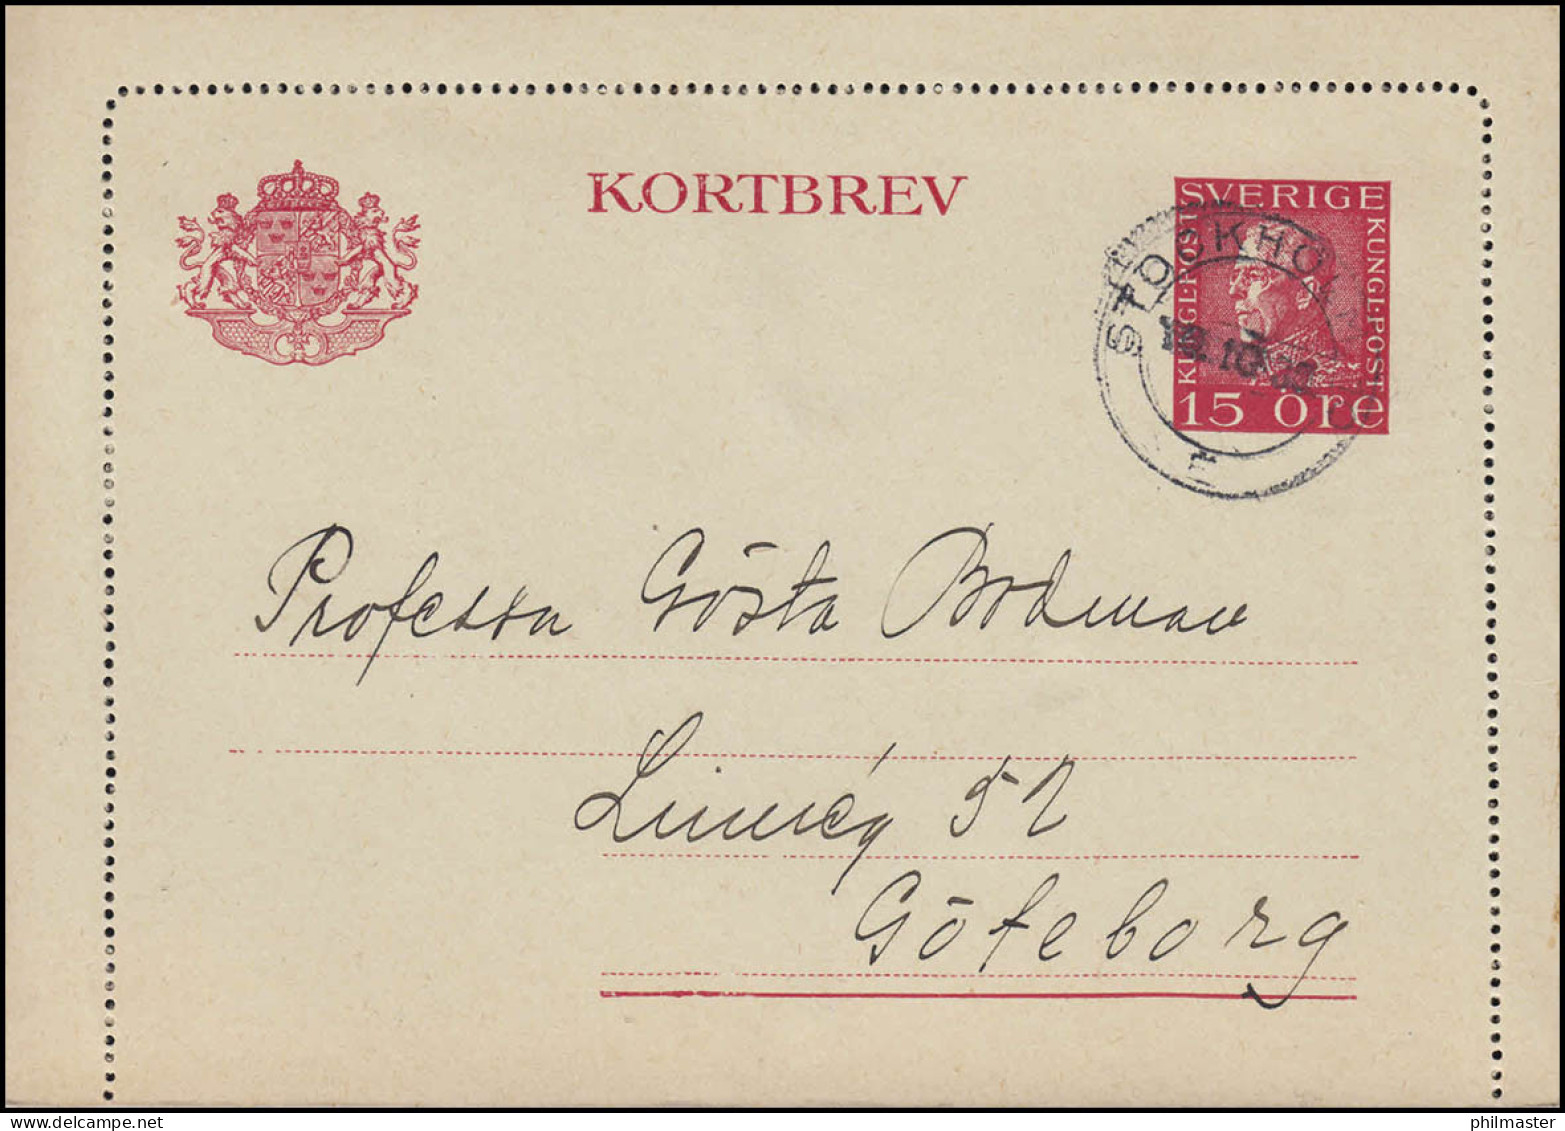 Kartenbrief K 27IW KORTBREV 15 Öre, STOCKHOLM 10.10.1930 Nach Göteborg - Ganzsachen